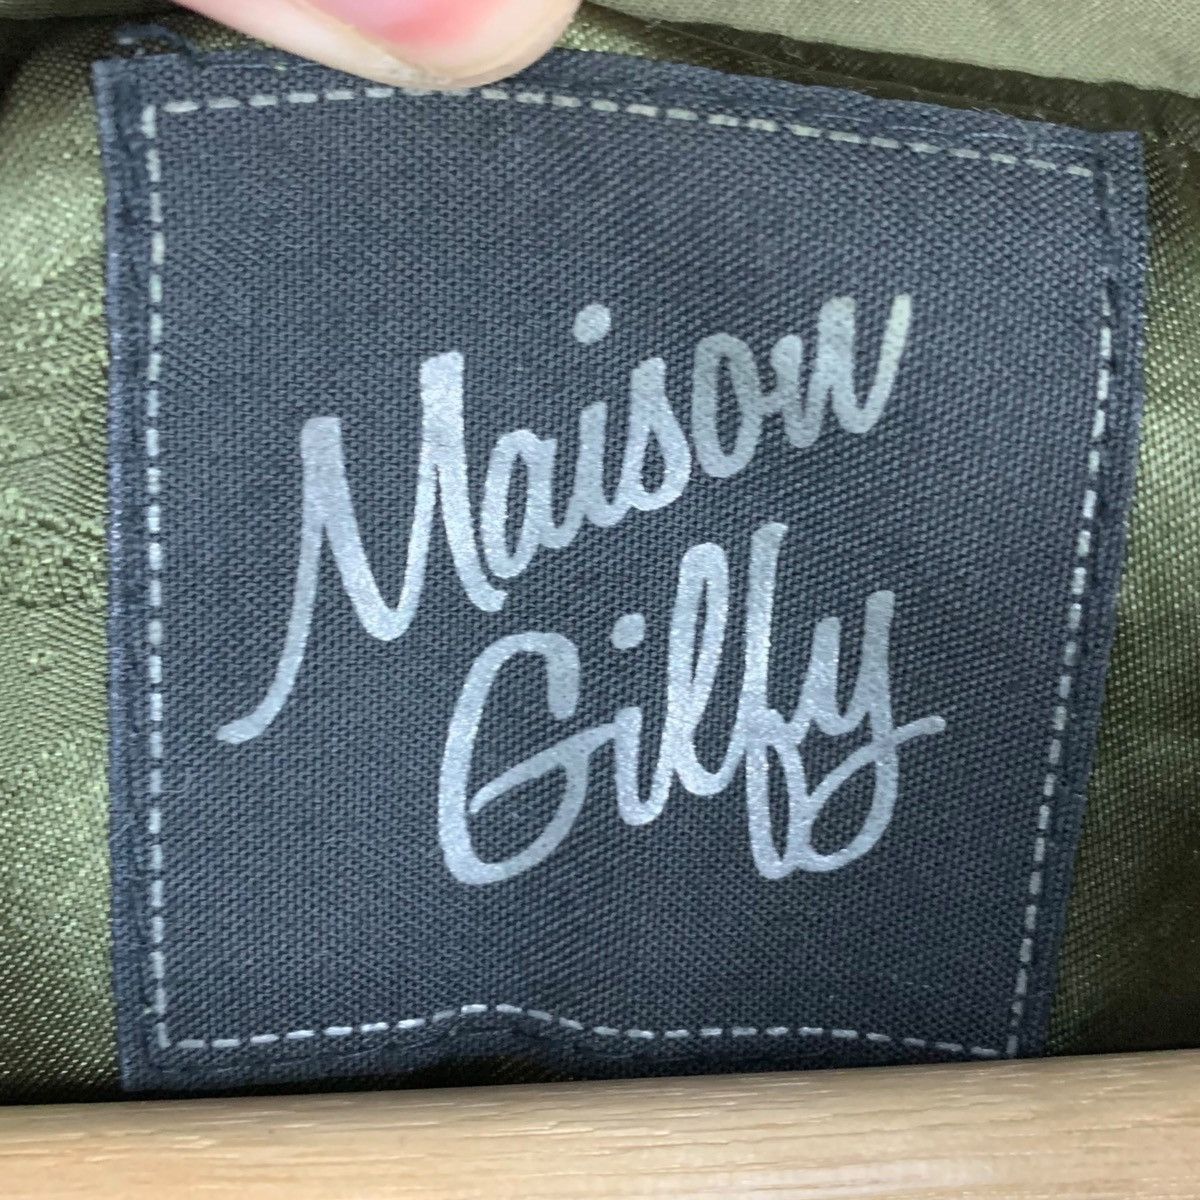 Designer Rare !! MAISON GILFY Long jacket jacket Size US S / EU 44-46 / 1 - 9 Thumbnail